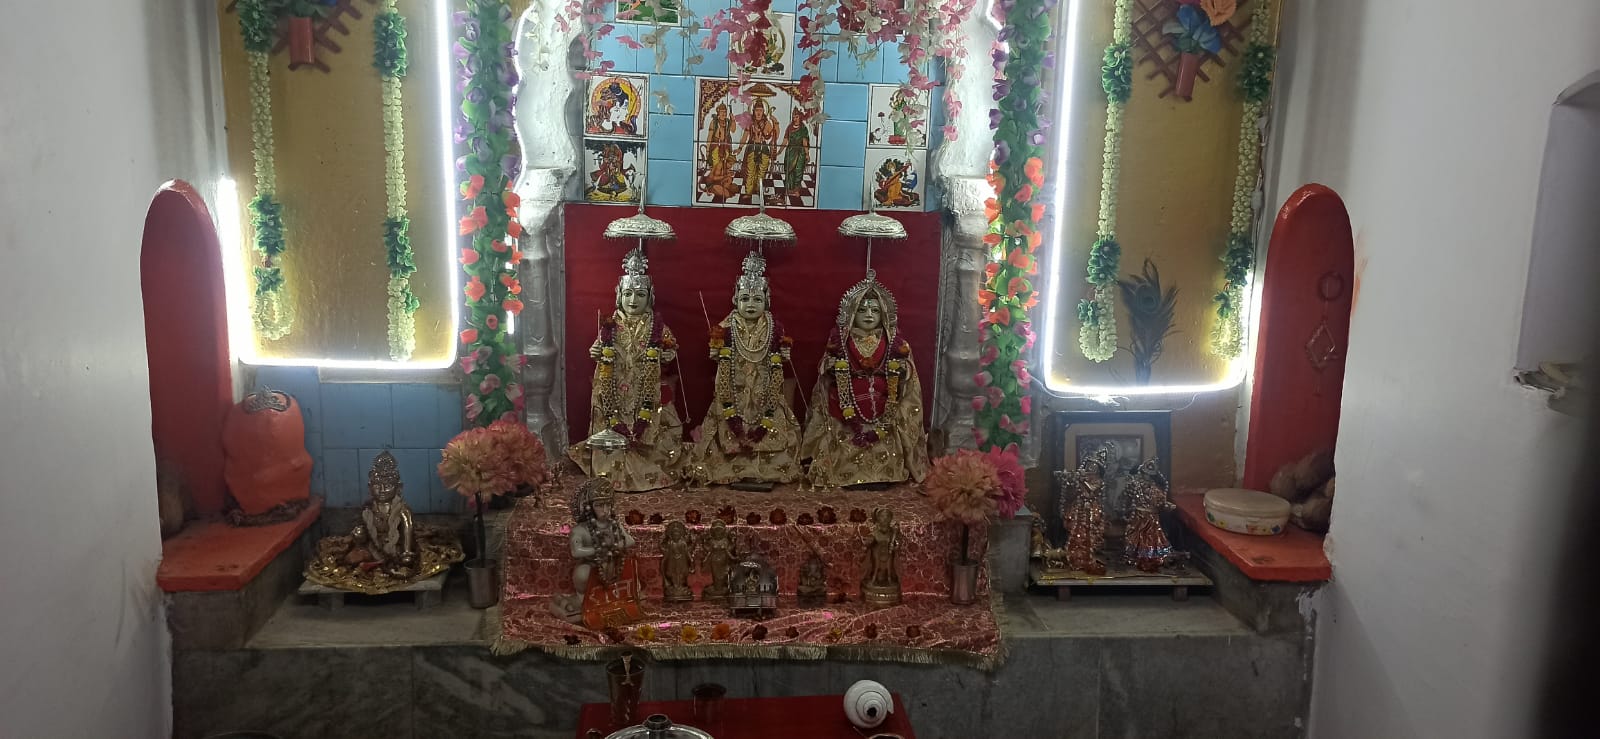 शताब्दी वर्ष की ओर पड़ाव का श्रीराम मंदिर, कछवाहा समाज ने दान में दी थी जमीन